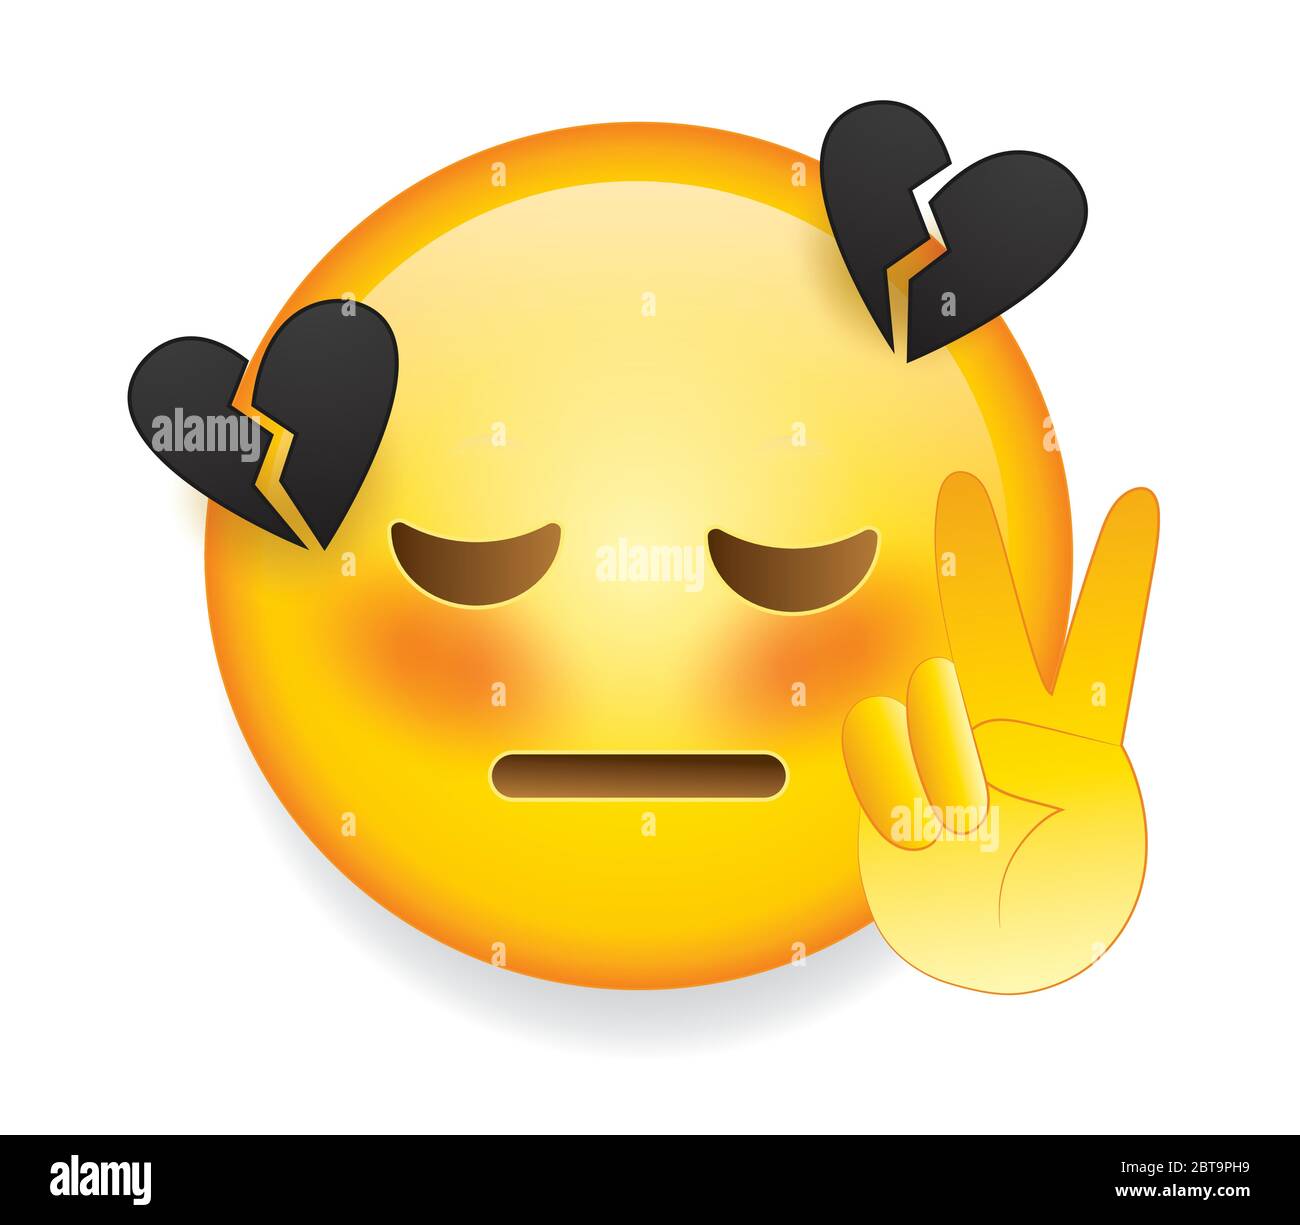 emoji sad - Girls - Sticker